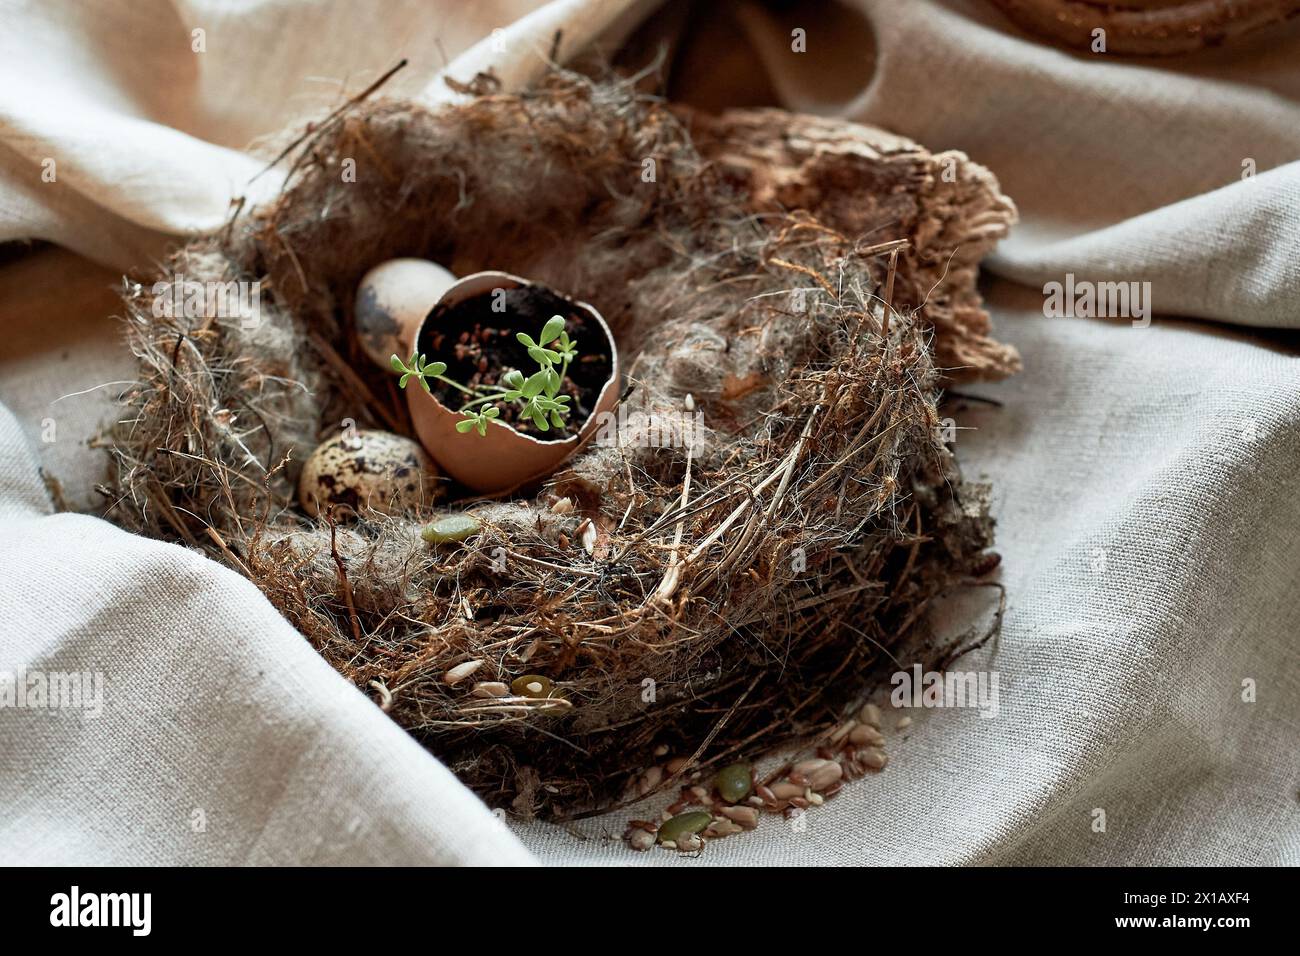 Un nid fait de brindilles et d’herbe contient un œuf cassé, les matériaux naturels montrent des signes d’une perte récente dans ce plat végétal terrestre Banque D'Images